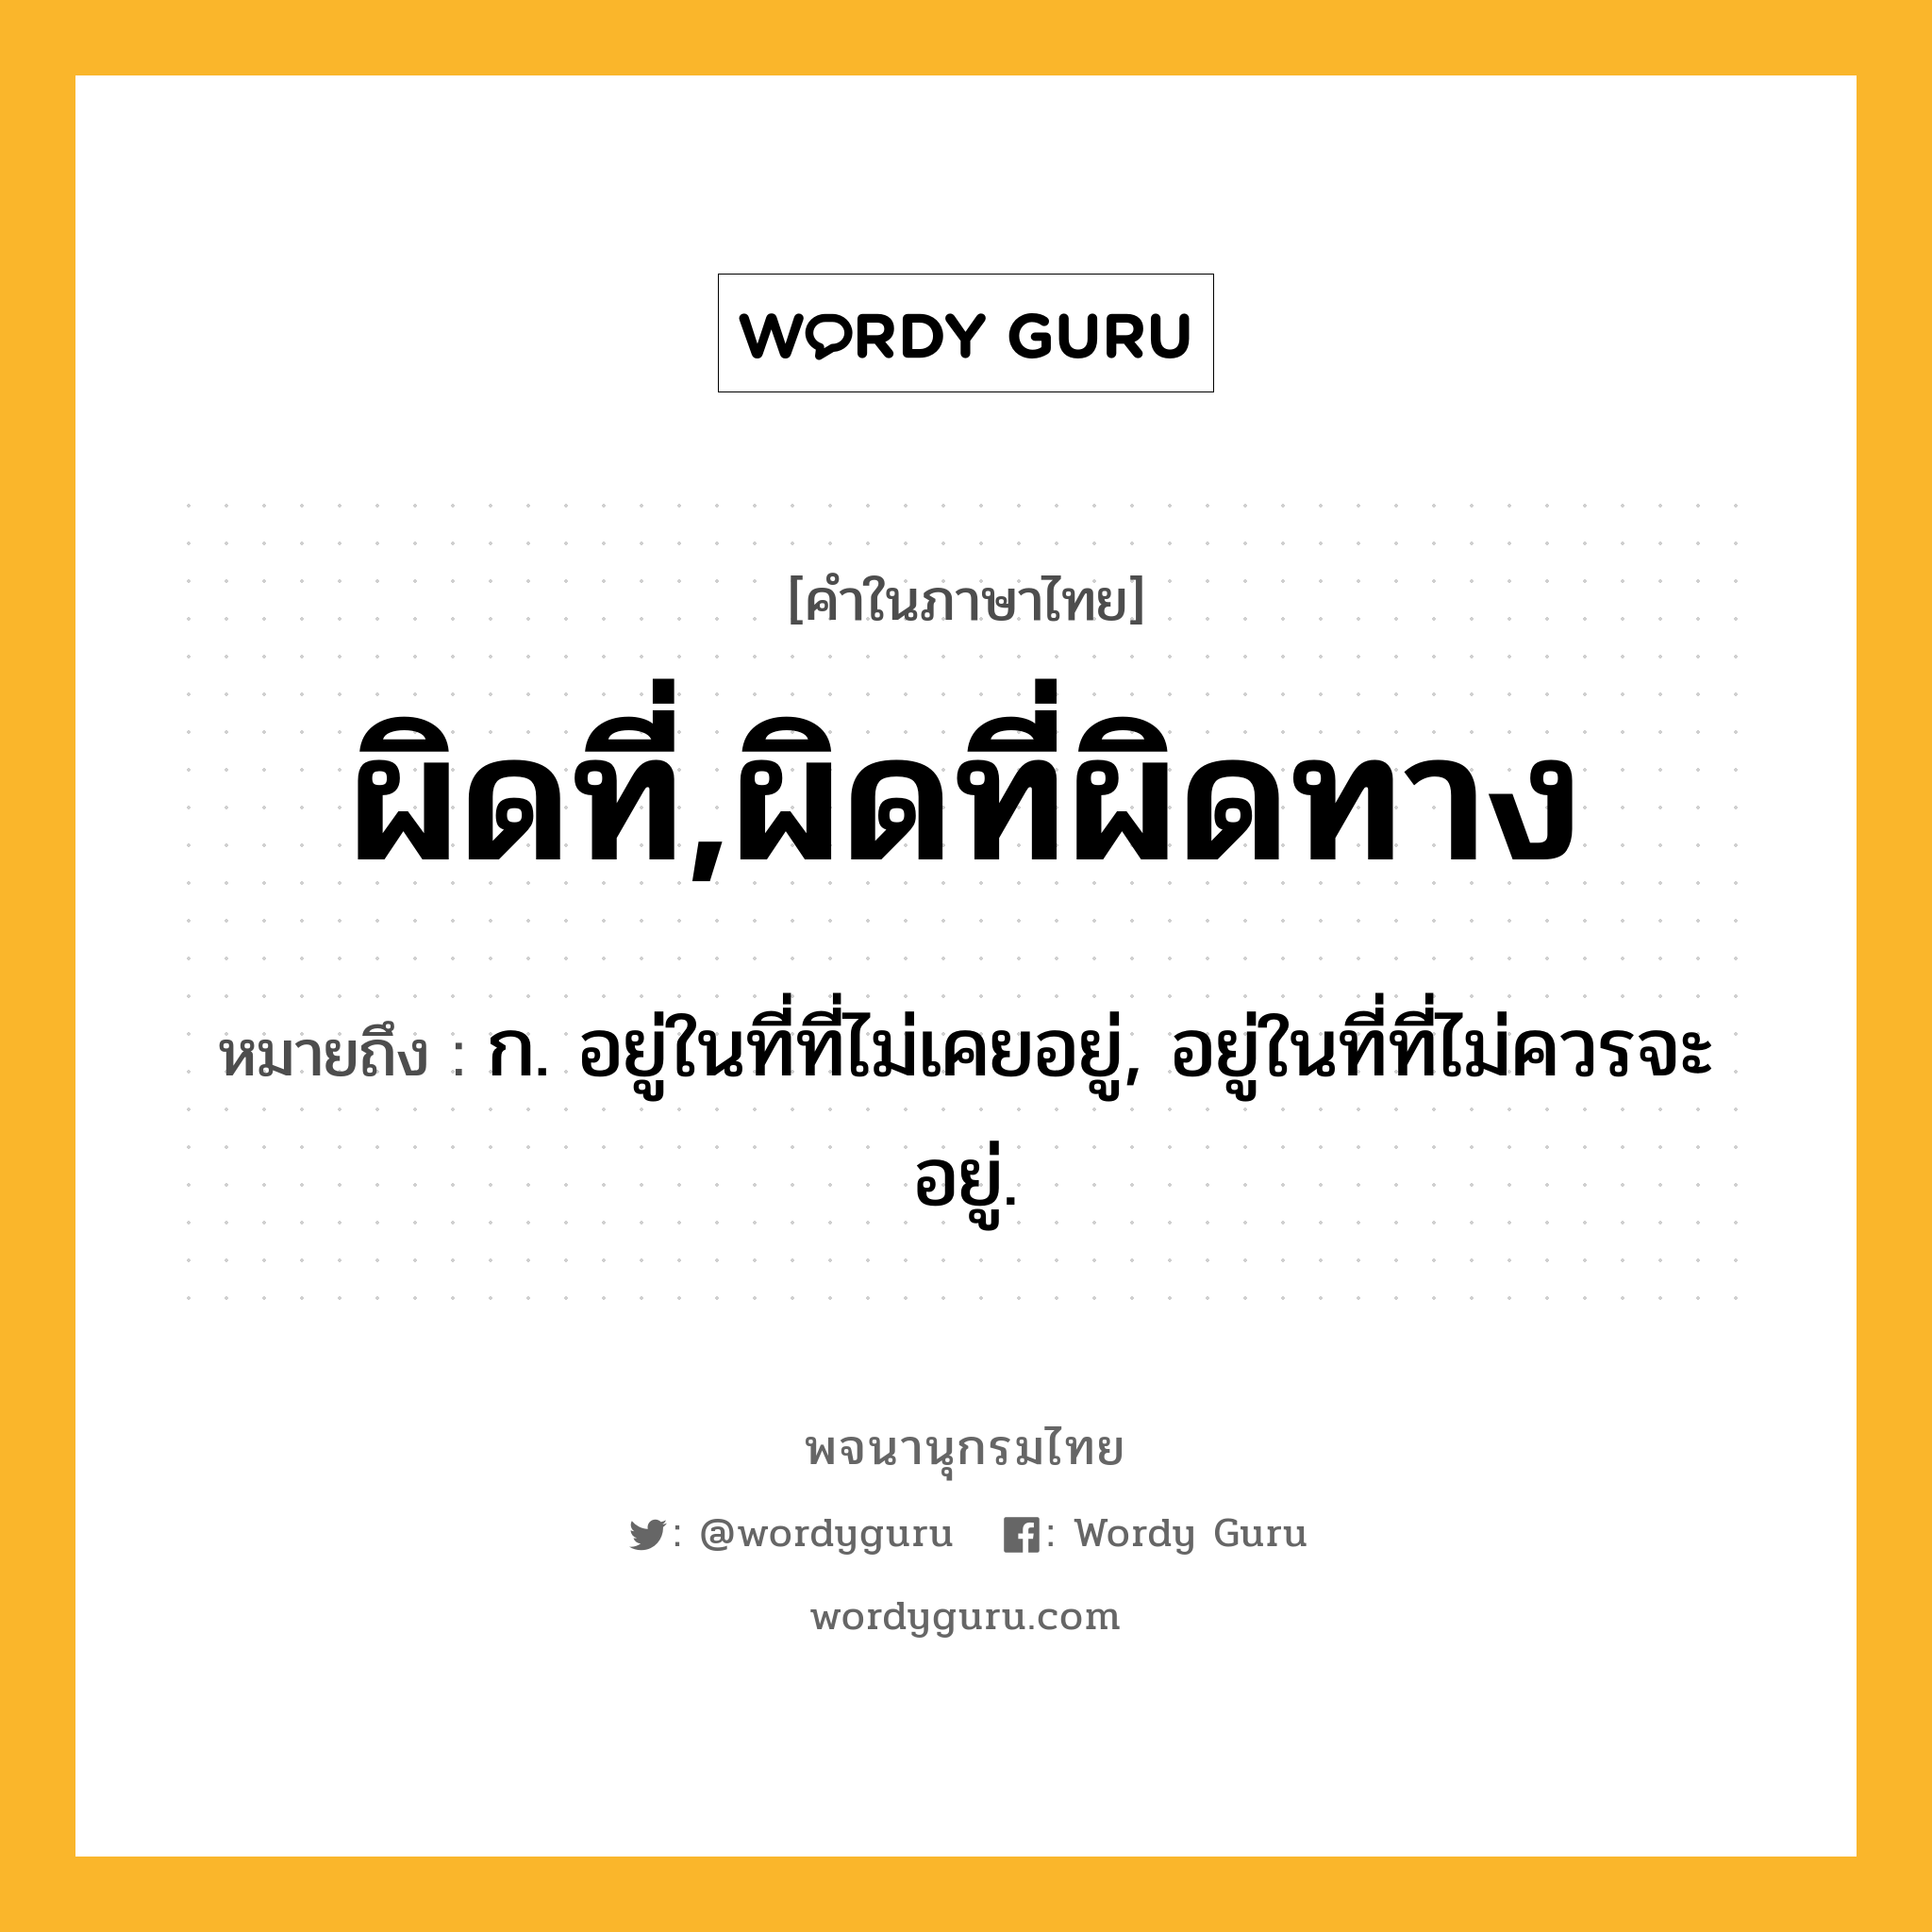 ผิดที่,ผิดที่ผิดทาง ความหมาย หมายถึงอะไร?, คำในภาษาไทย ผิดที่,ผิดที่ผิดทาง หมายถึง ก. อยู่ในที่ที่ไม่เคยอยู่, อยู่ในที่ที่ไม่ควรจะอยู่.